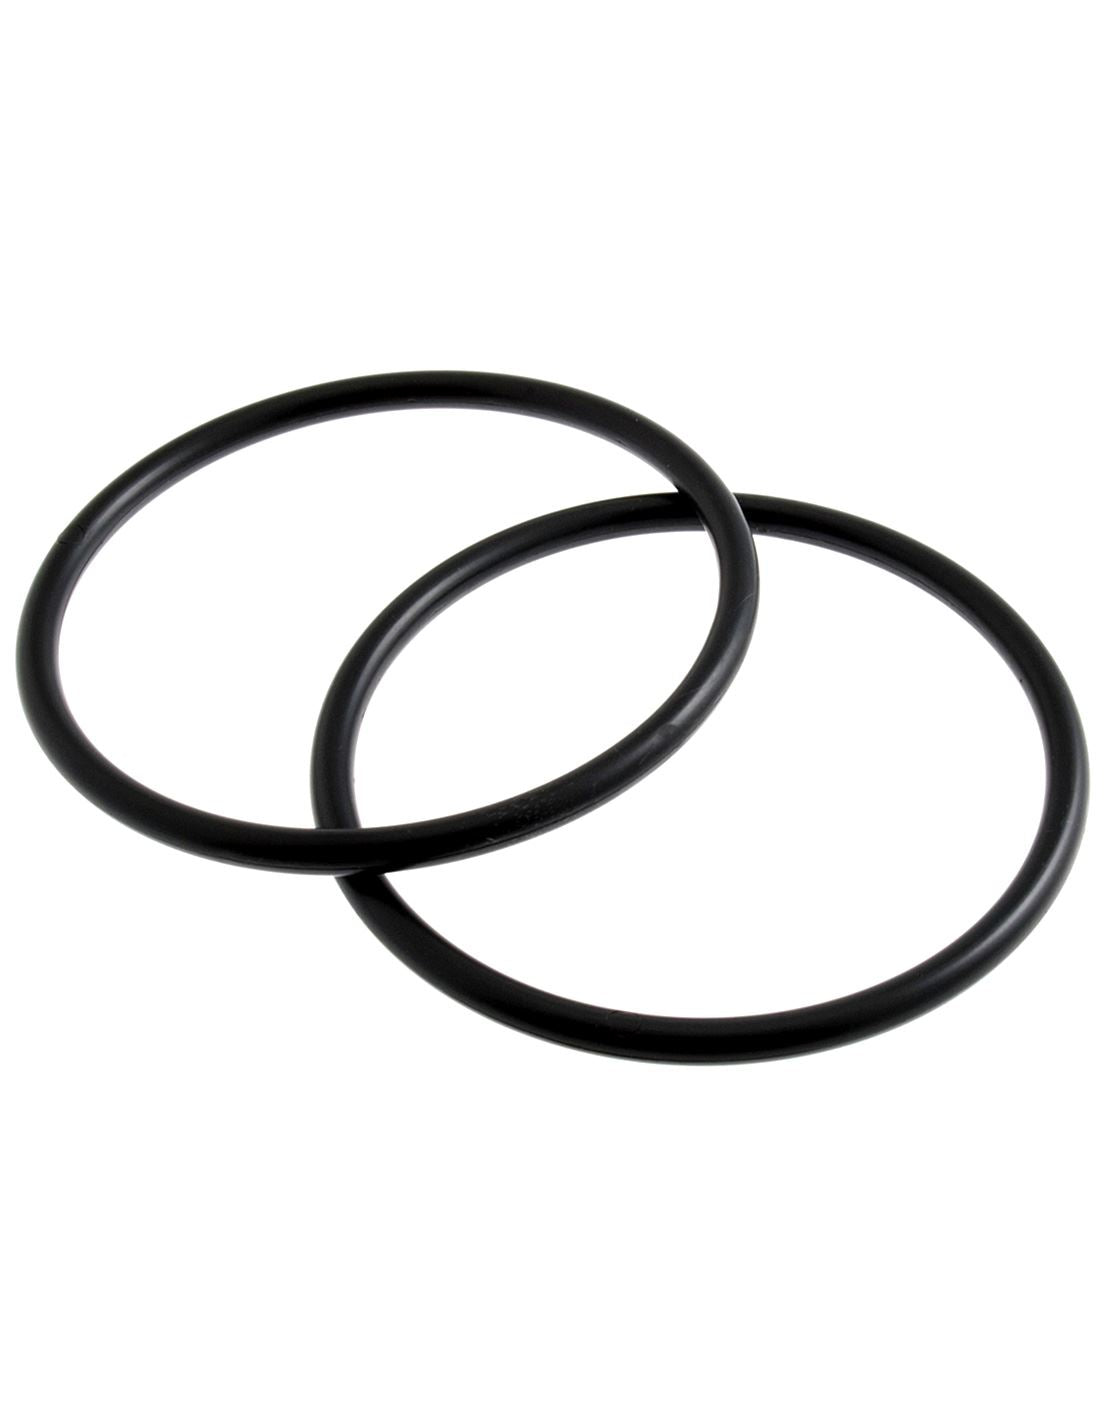 Trimits black graphite (CFH1/GRP) plastic round bag handles - 12.5cm